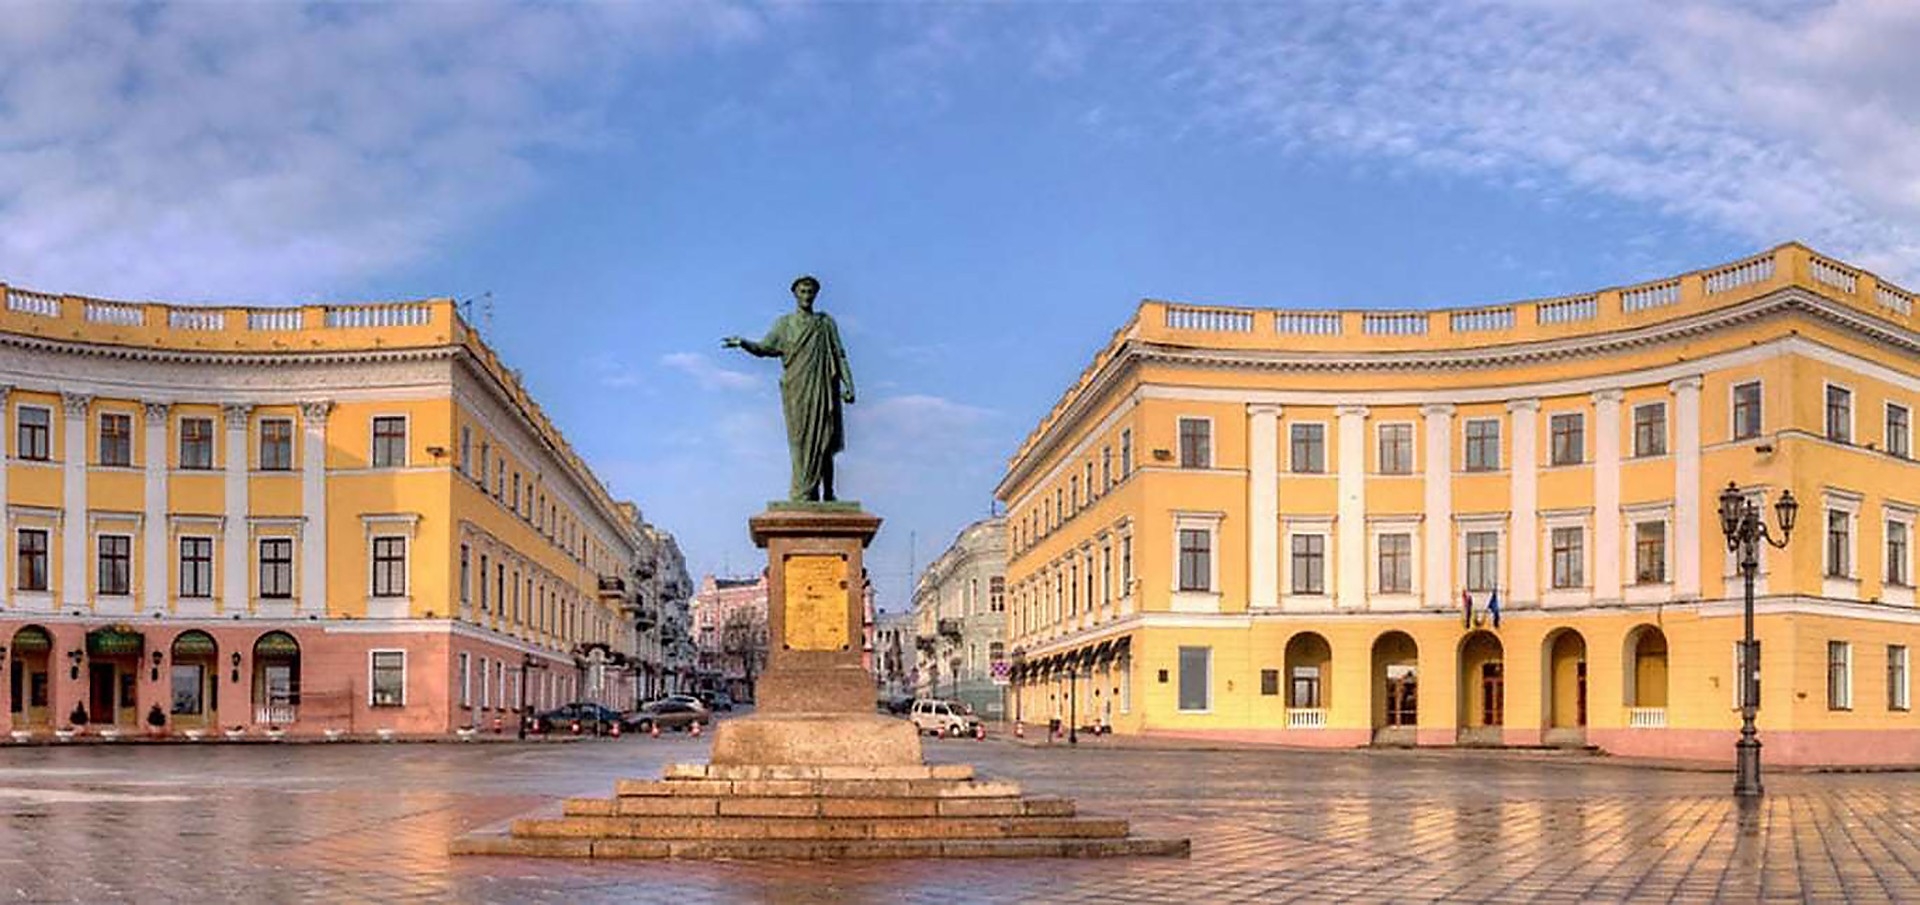 Памятник Дюку Ришелье в Одессе фото